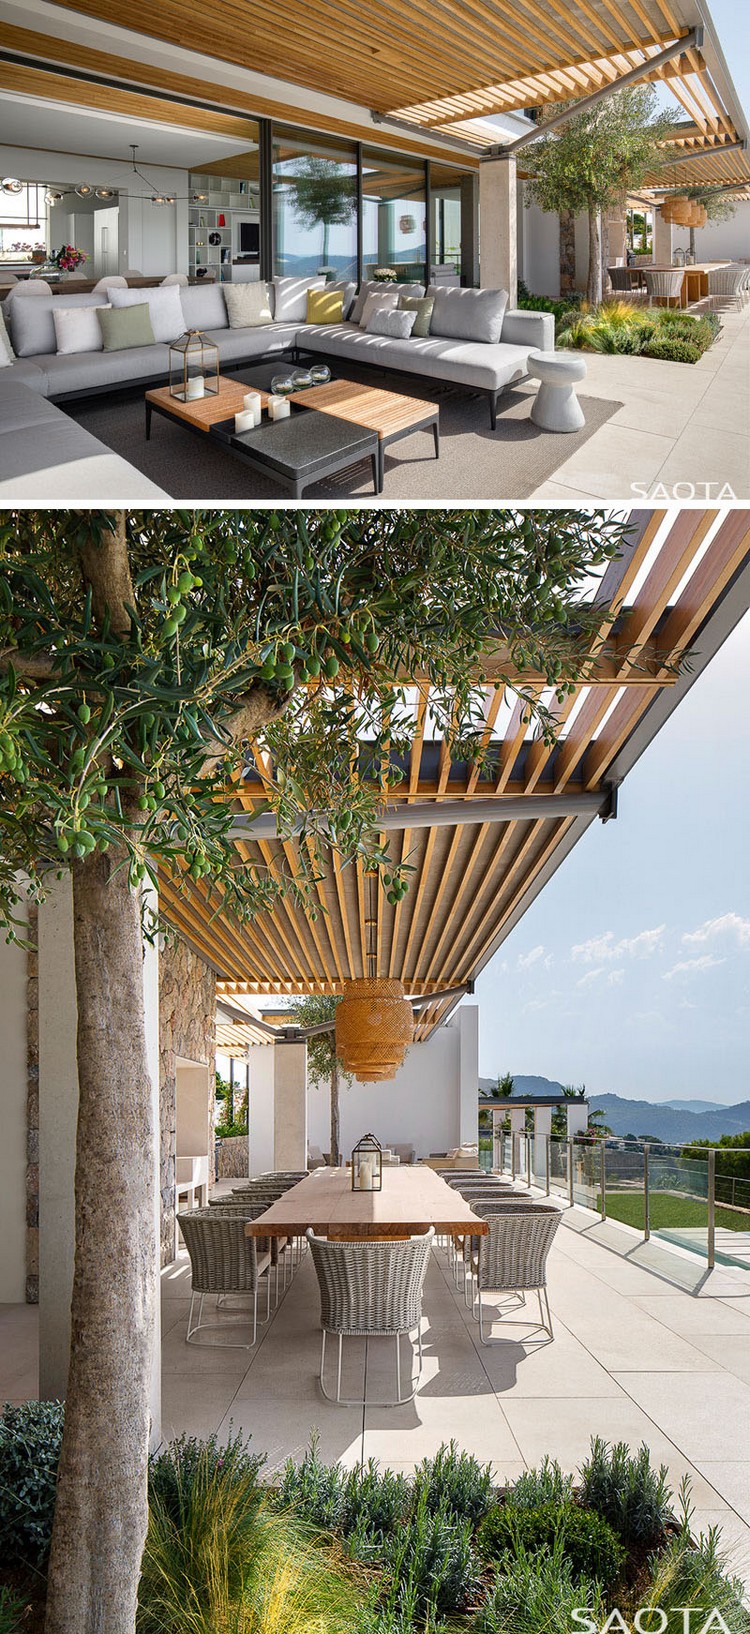 pergola bois sur mesure pour aménager terrasse moderne maison luxe Majorque Espagne projet studio design moderne Saota